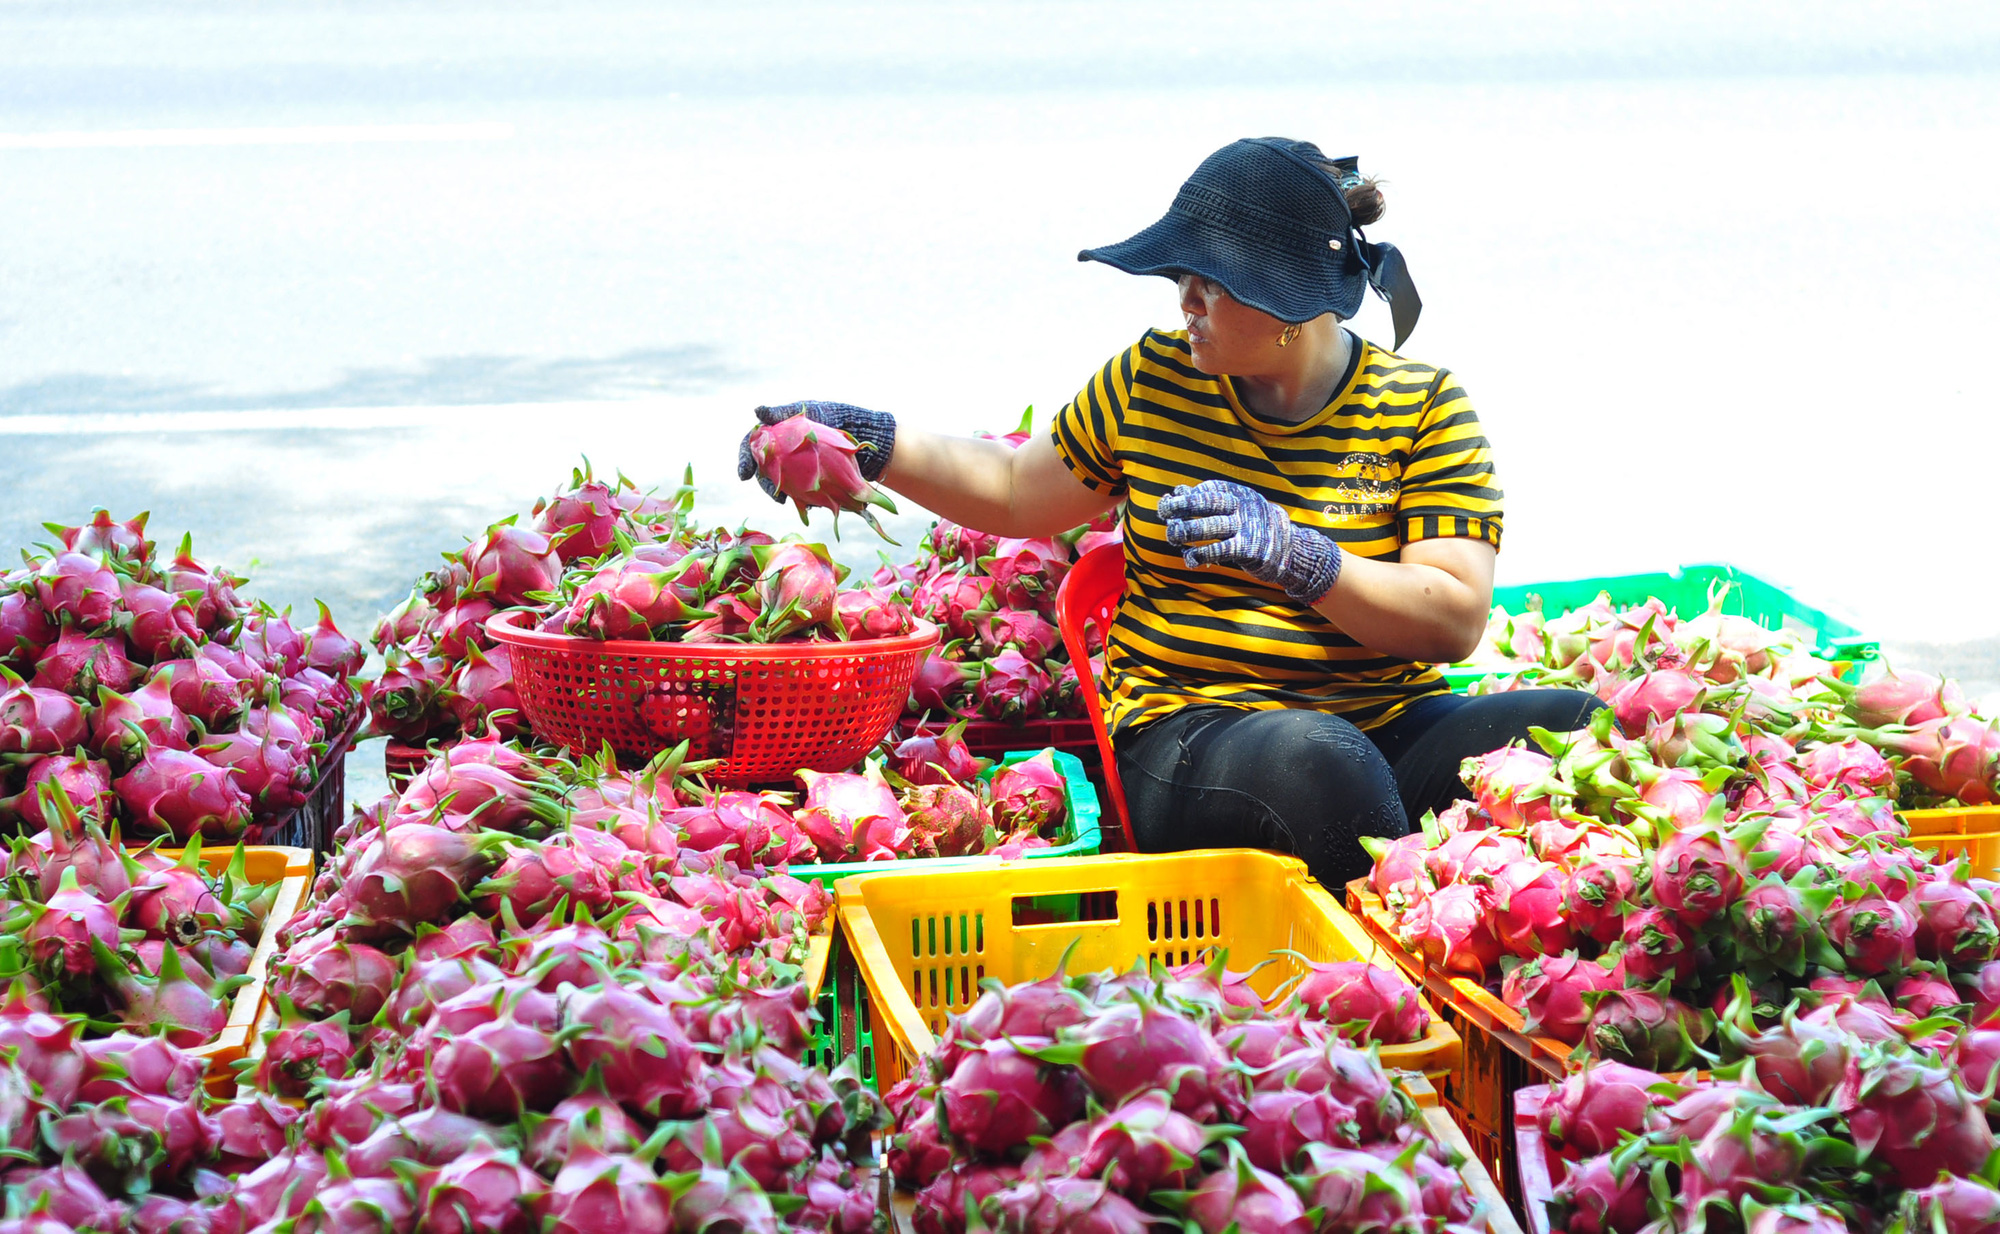 Trung Quốc thu mua tới tấp, chi hàng trăm triệu USD mua 9 loại trái cây của Việt Nam chỉ trong 3 tháng - Ảnh 1.